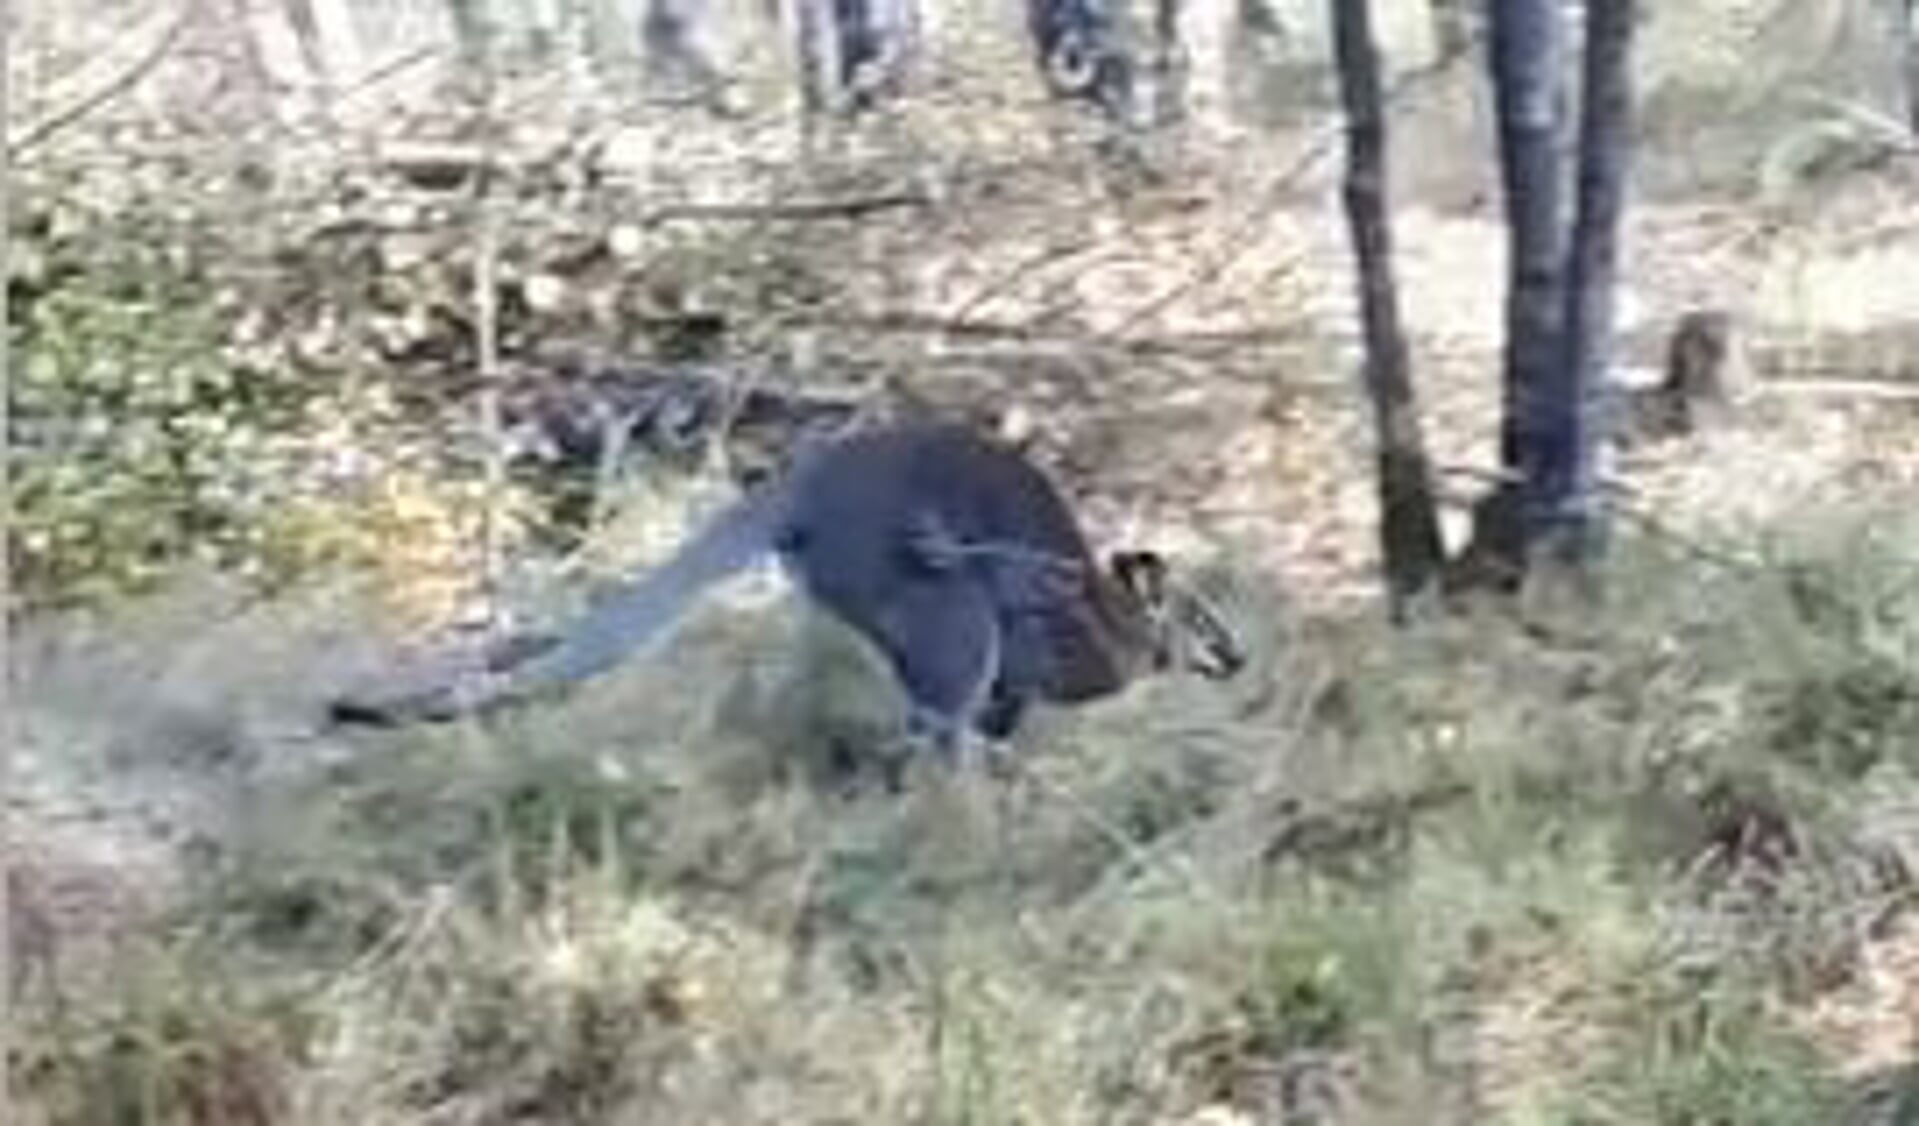 De kangoeroe was volgens de politie erg verzwakt. (foto: politie)